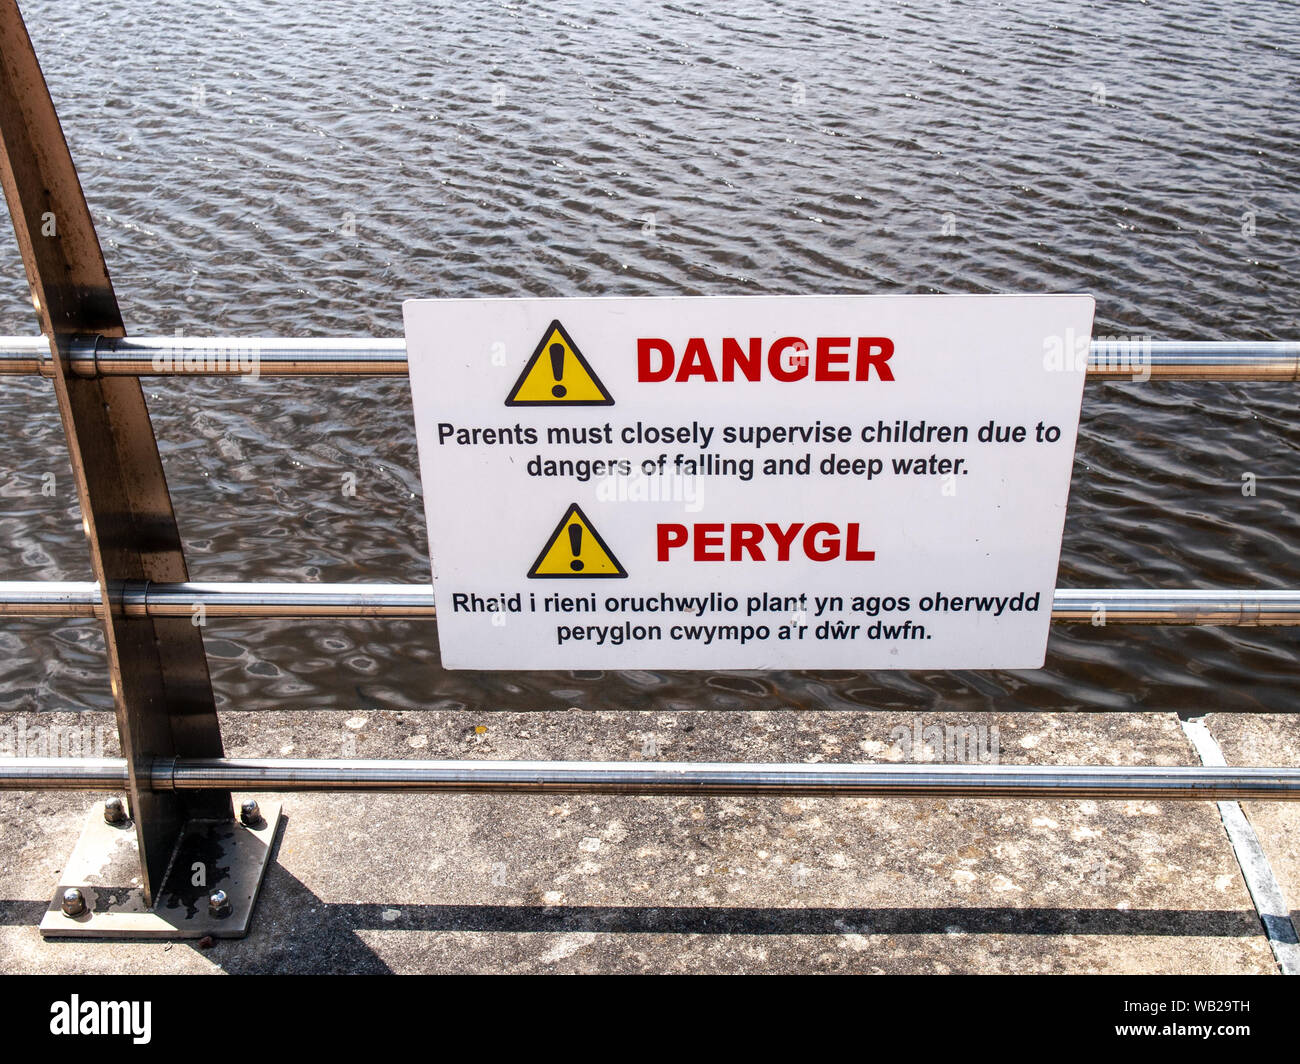 Panneau d'avertissement sur les dangers de chute et l'eau profonde à côté de la rivière Tawe à Swansea. Double-langue. Le gallois/anglais. Pays de Galles, Royaume-Uni. Banque D'Images